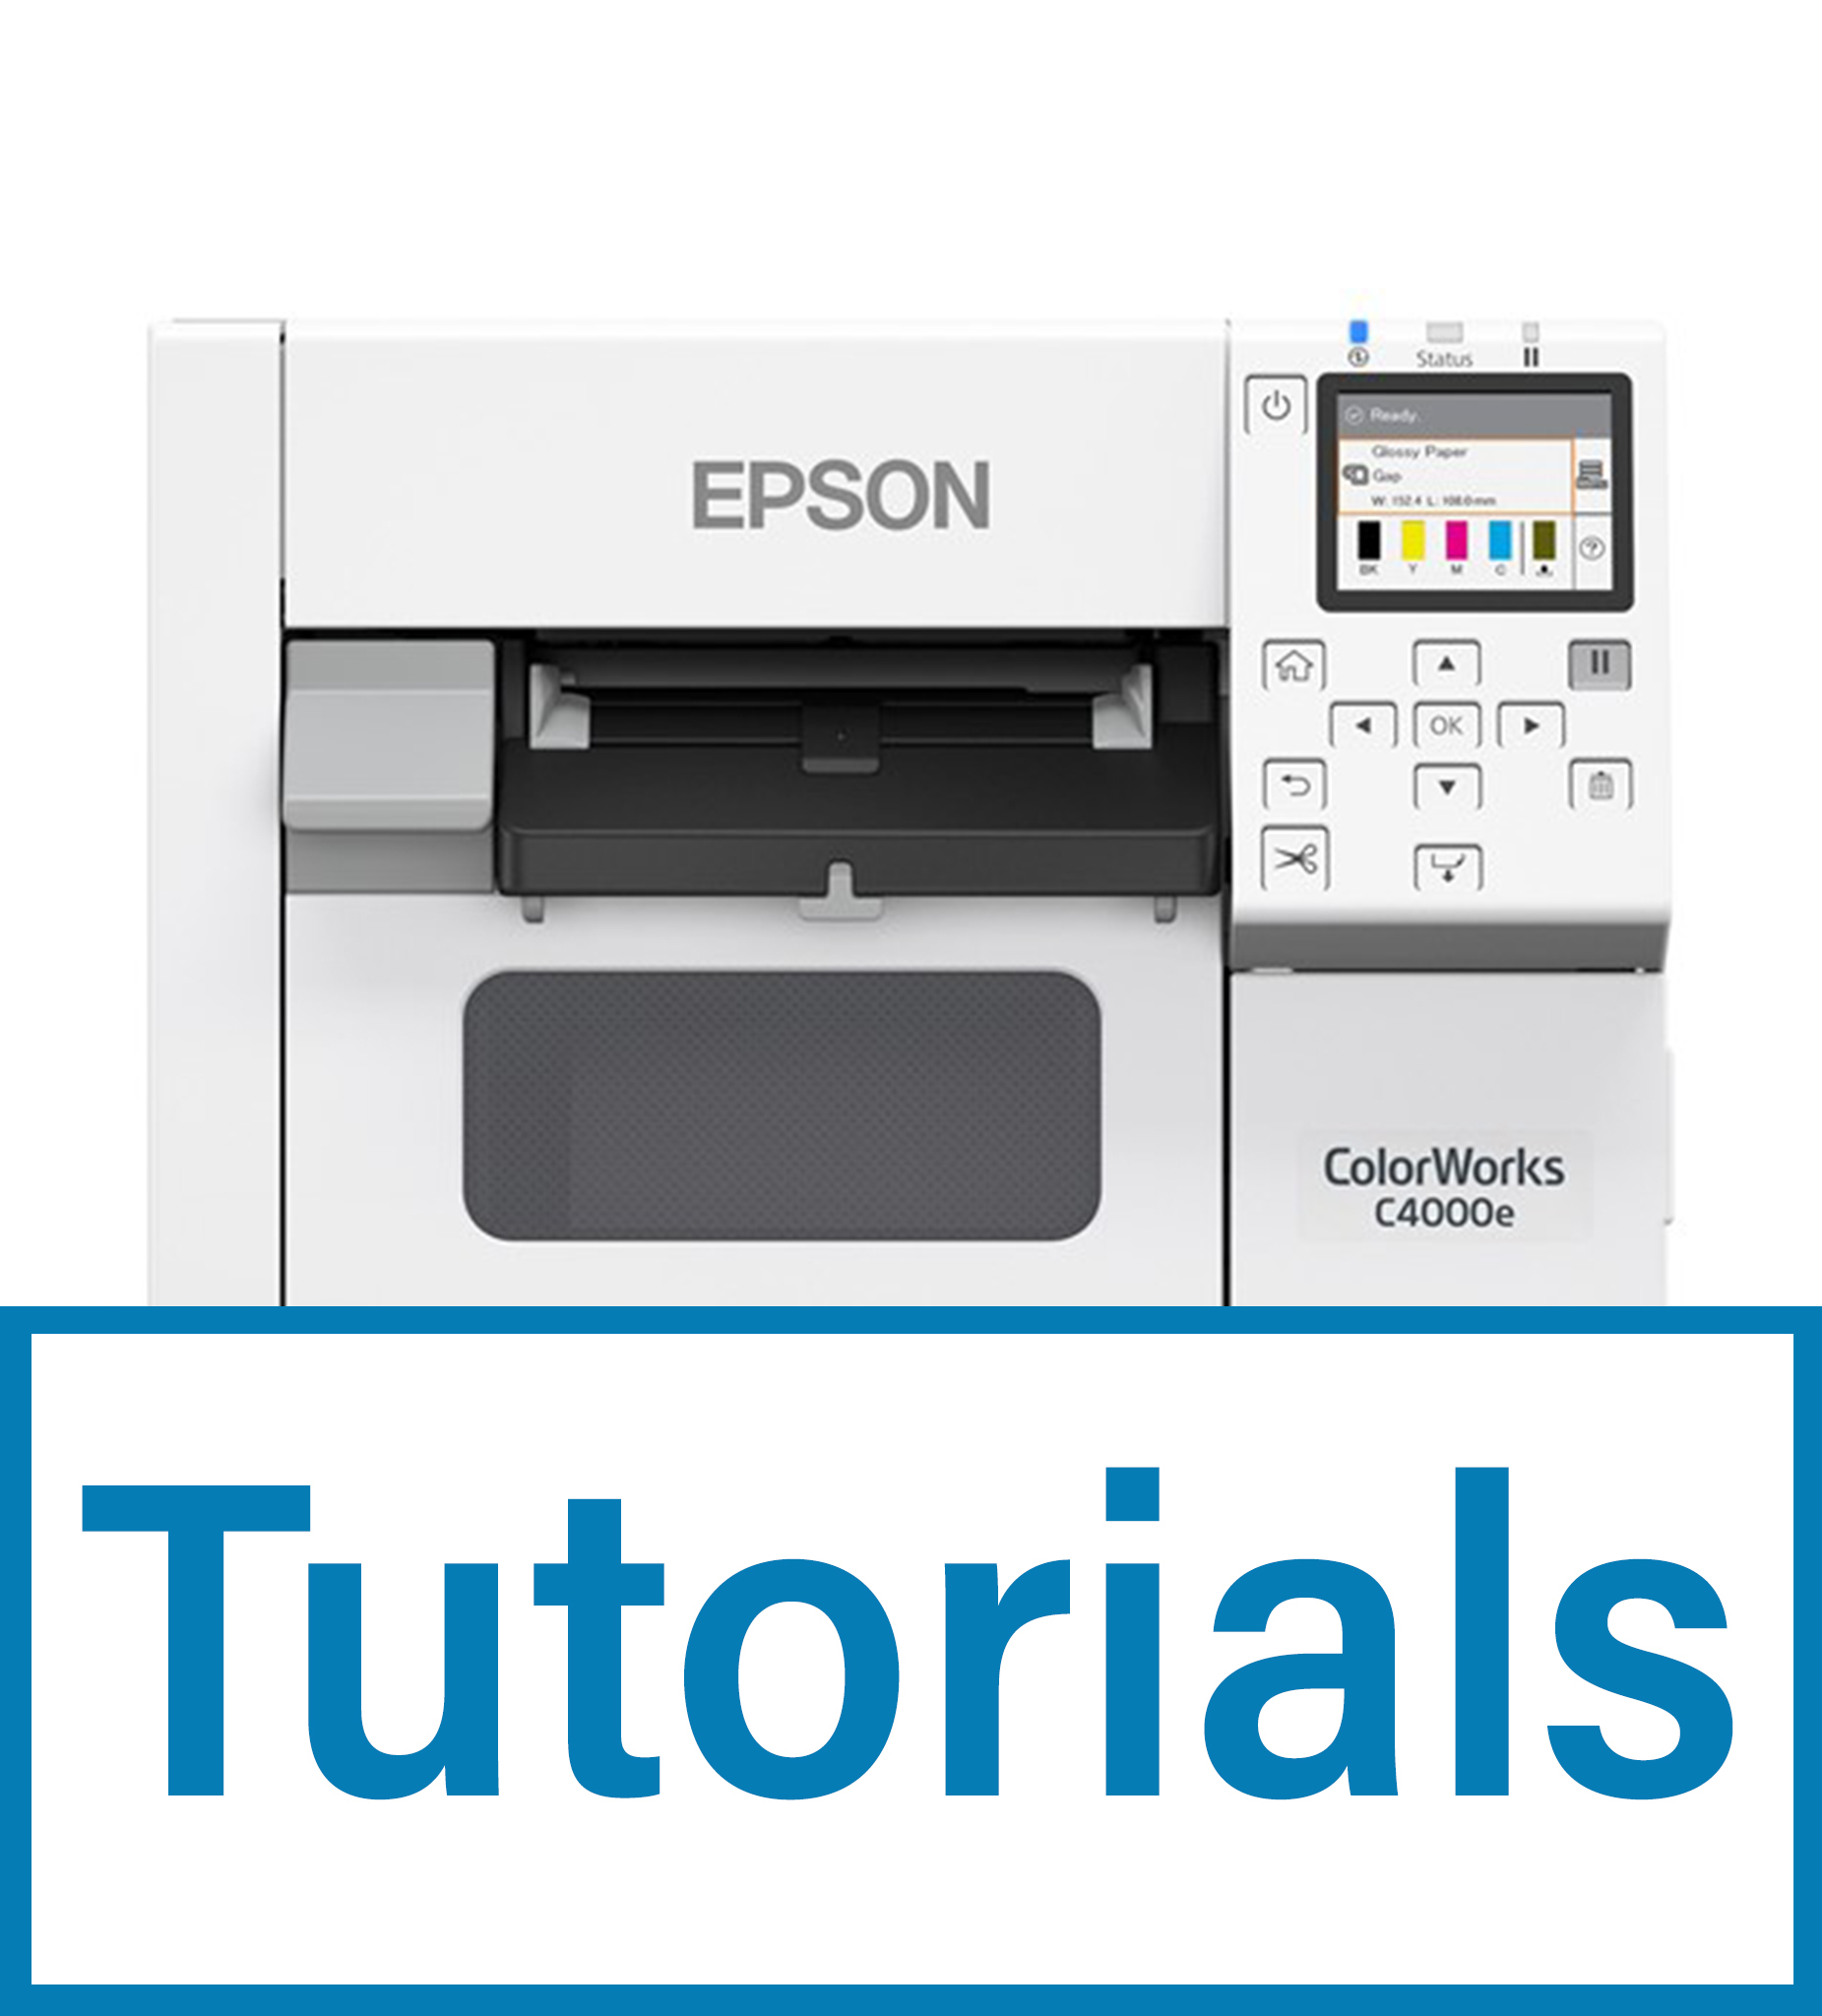 EPSON ColorWorks CW C4000 kategorisi için resim